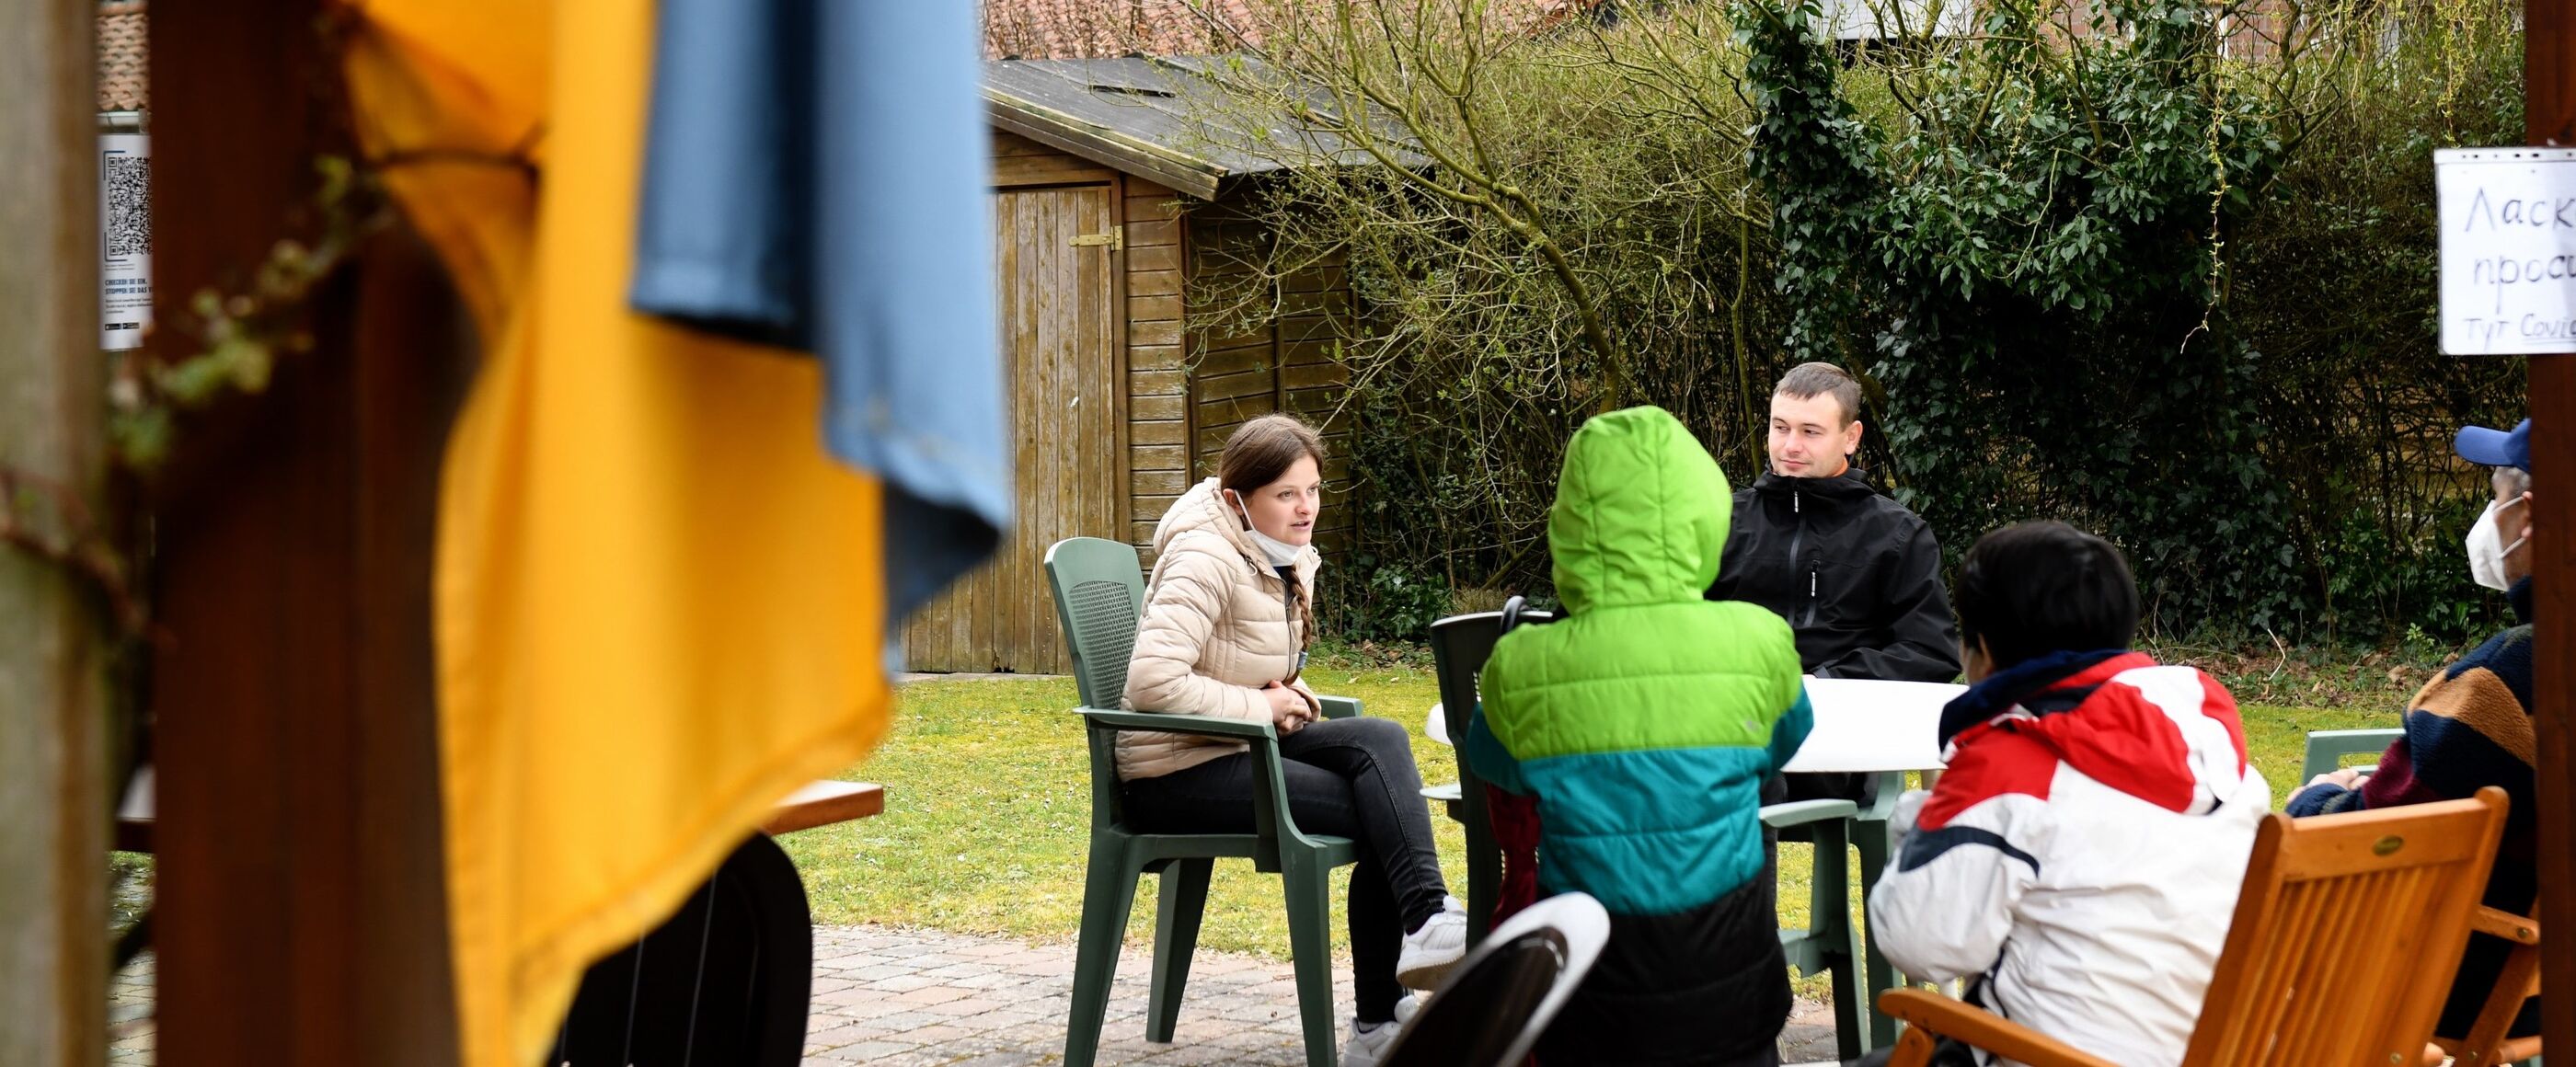 Fünf Menschen sitzen um einen Gartentisch auf einer Terrasse. Links, unscharf im Vordergrund, hängt eine blau-gelbe Fahne. 